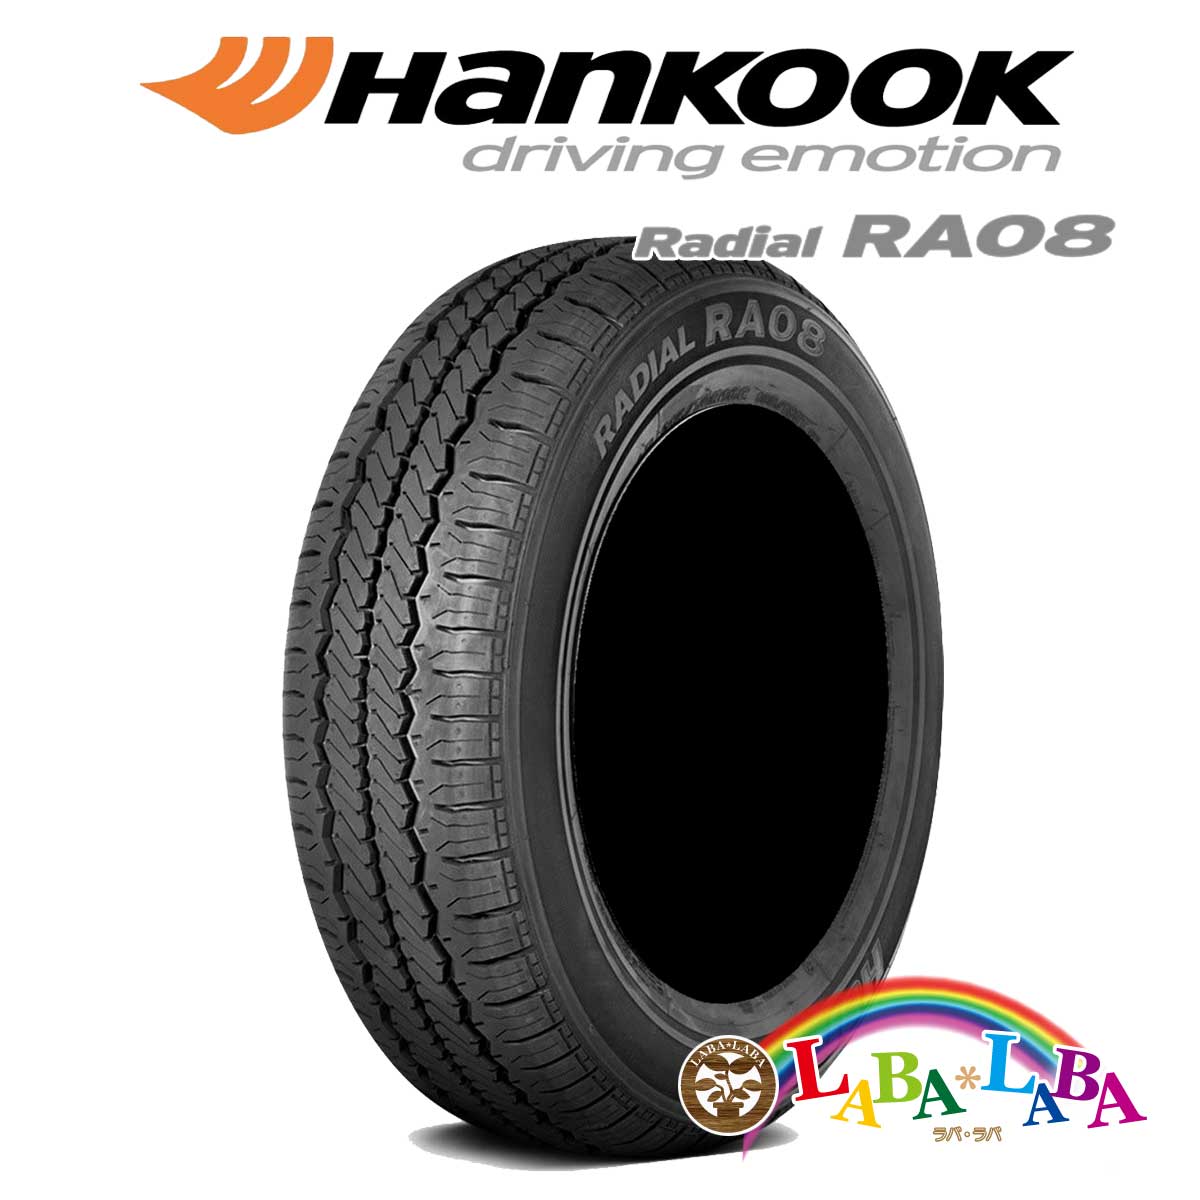 HANKOOK ハンコック RADIAL ラジアル RA08 165R13 8PR サマータイヤ LT バン 2本セット